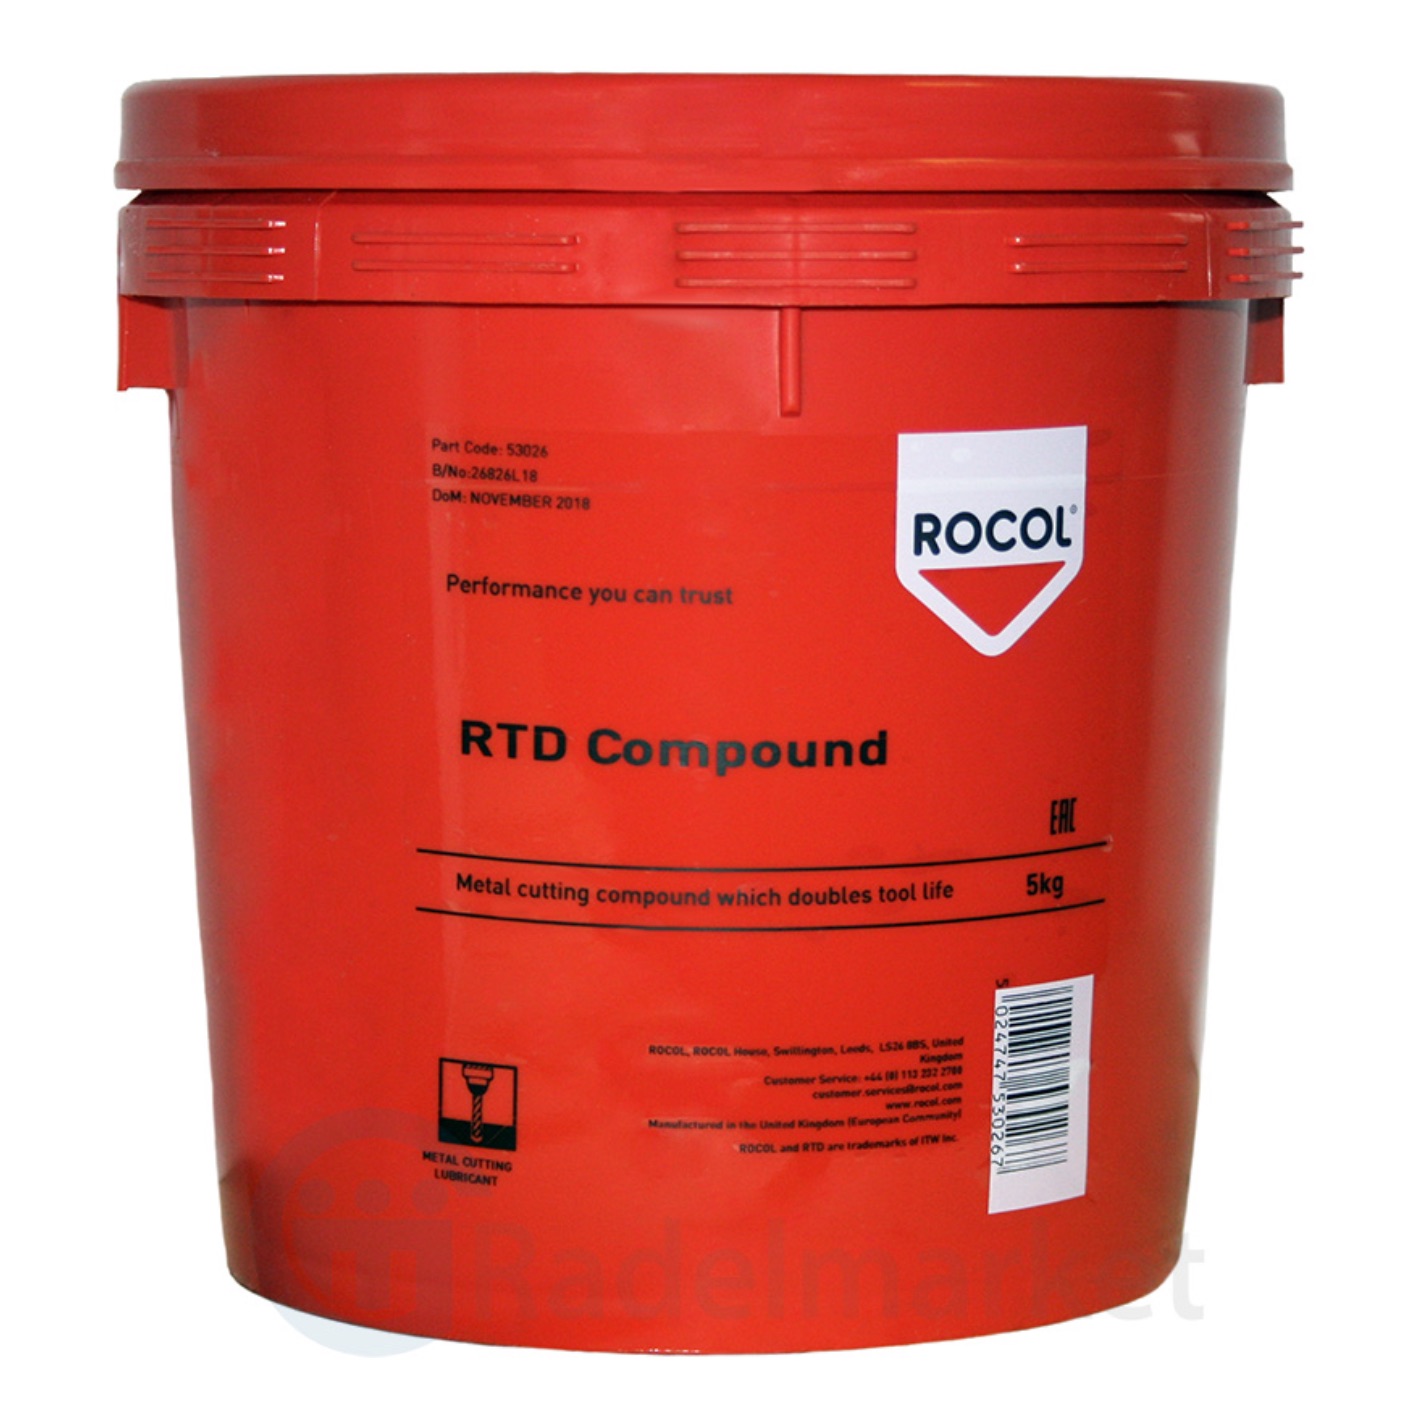 RTD Compound Паста ручного применения для накатки резьбы и другой обработки металла